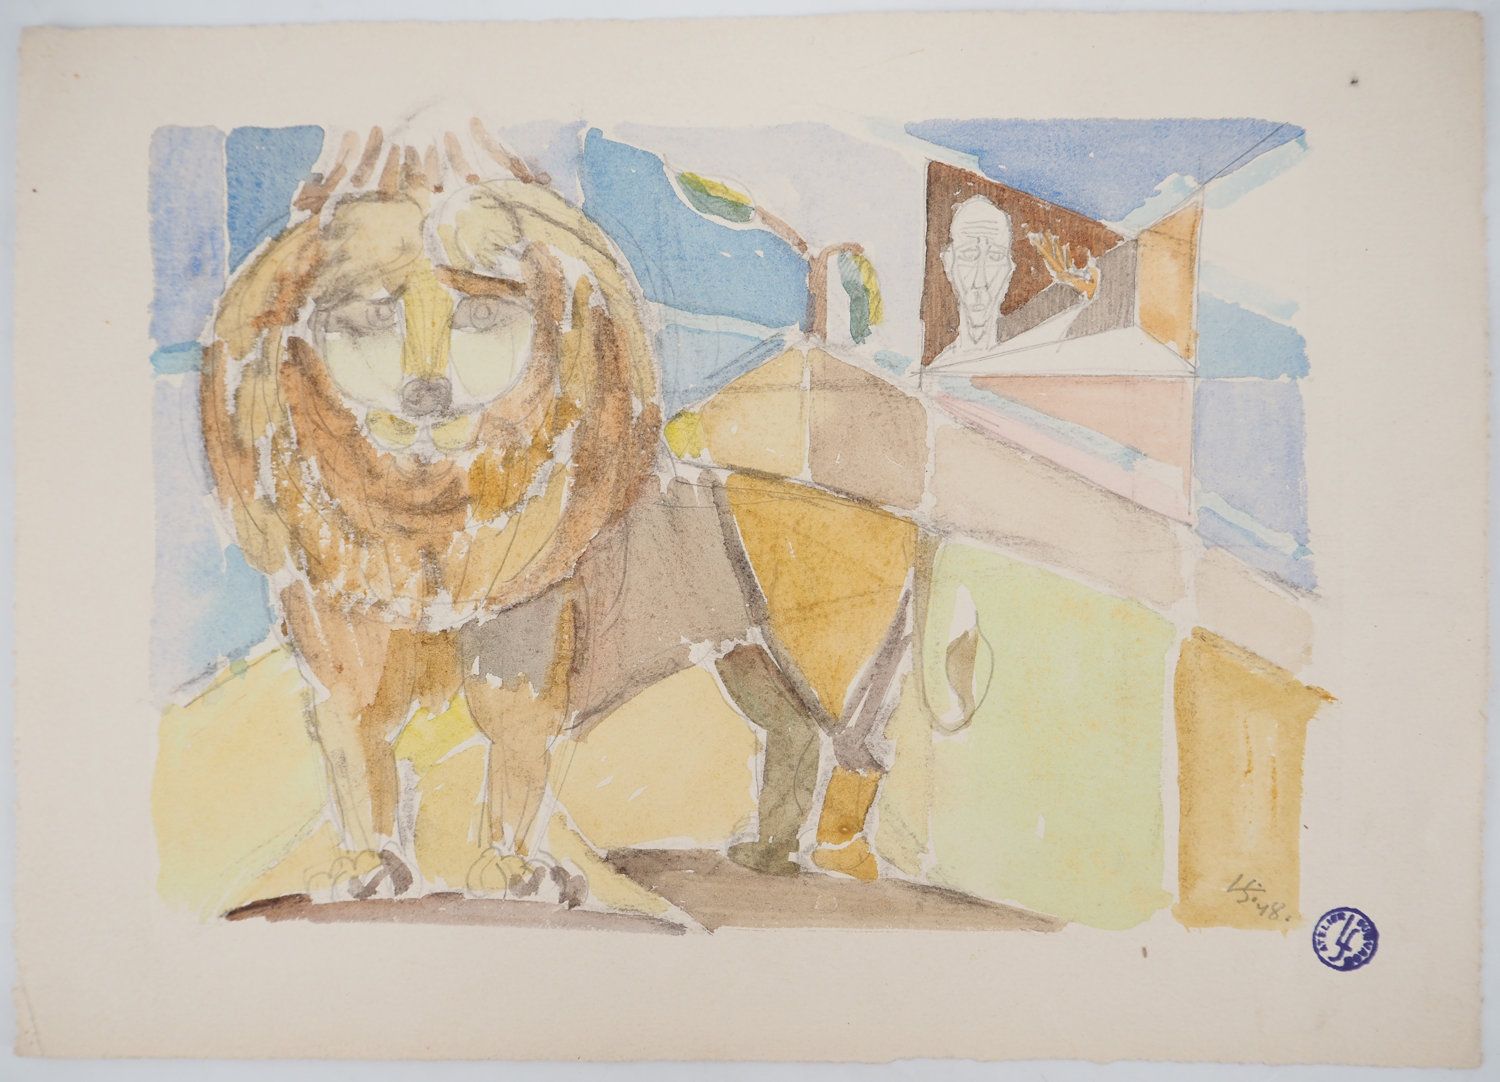 Léopold SURVAGE 莱奥波德-苏瓦格(1879-1968)

竞技场上的狮子》，1948年

原始水彩画

签名：右下角有字母图案

日期为(19)&hellip;